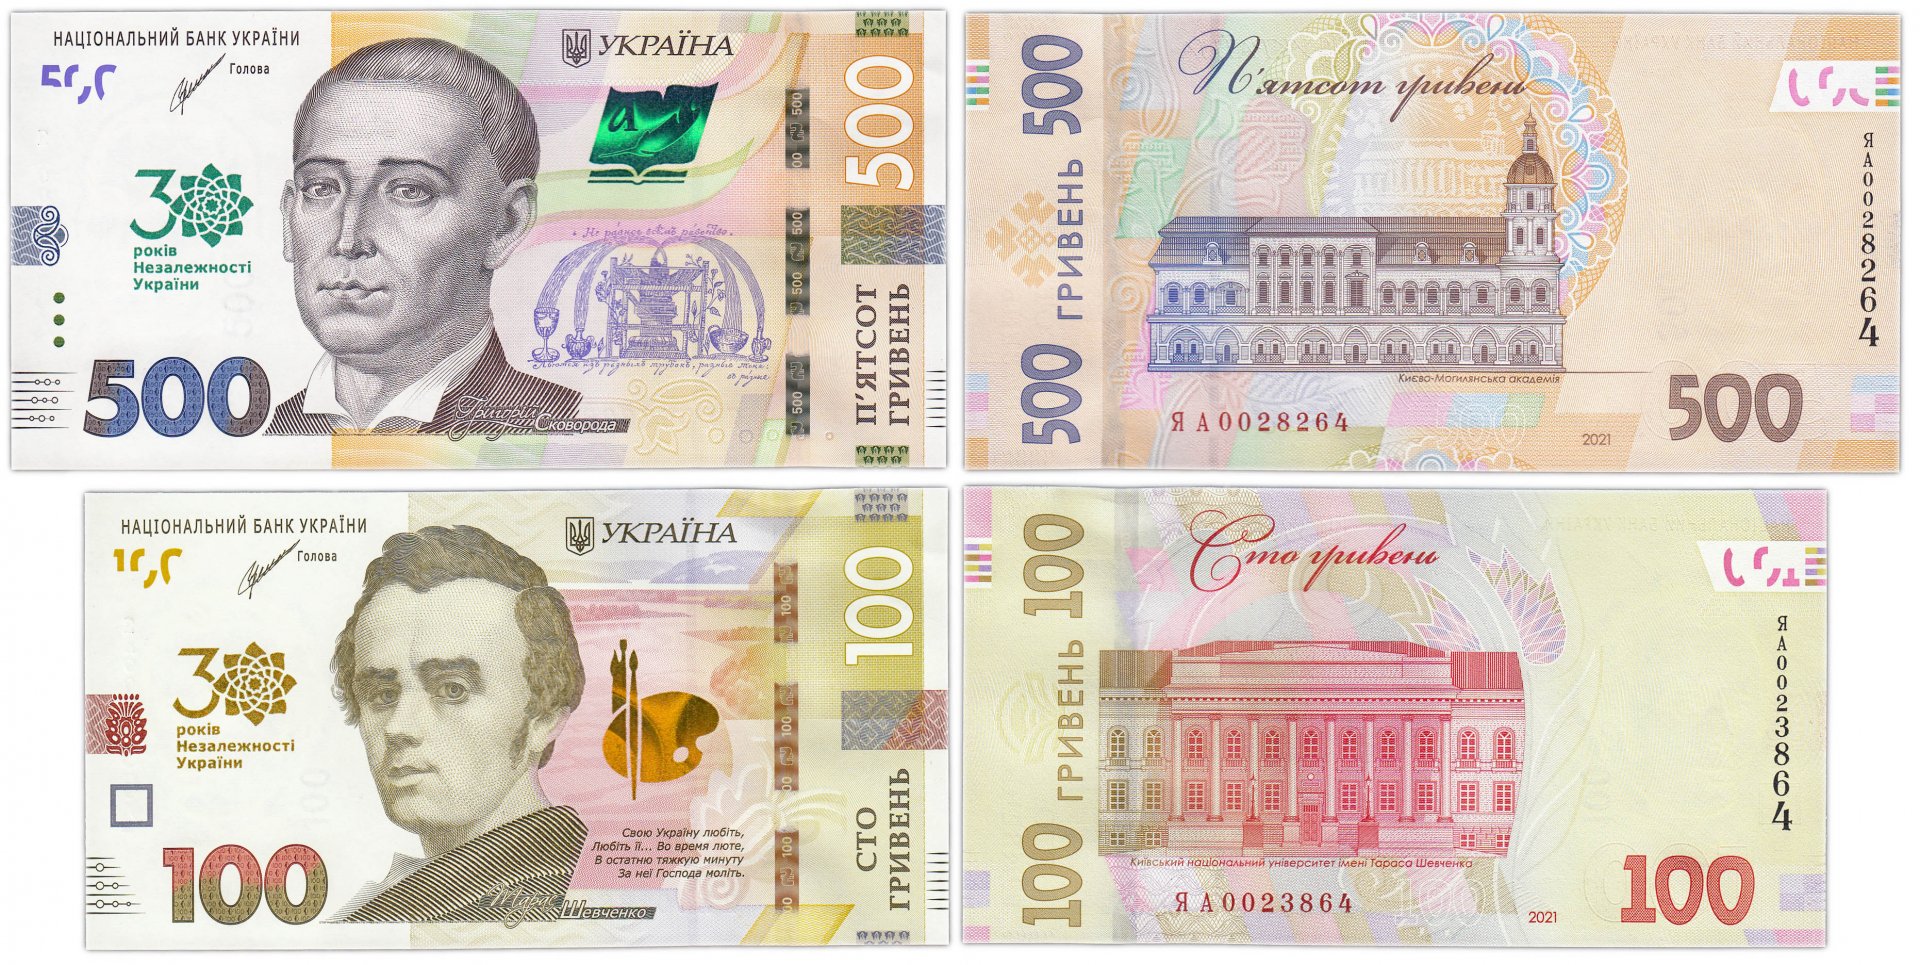 500 гривен в рублях на сегодня. 500 Гривен купюра. Украинская купюра 500 грн. 500 Гривен 2021 года. Банкноты Украины 2021.